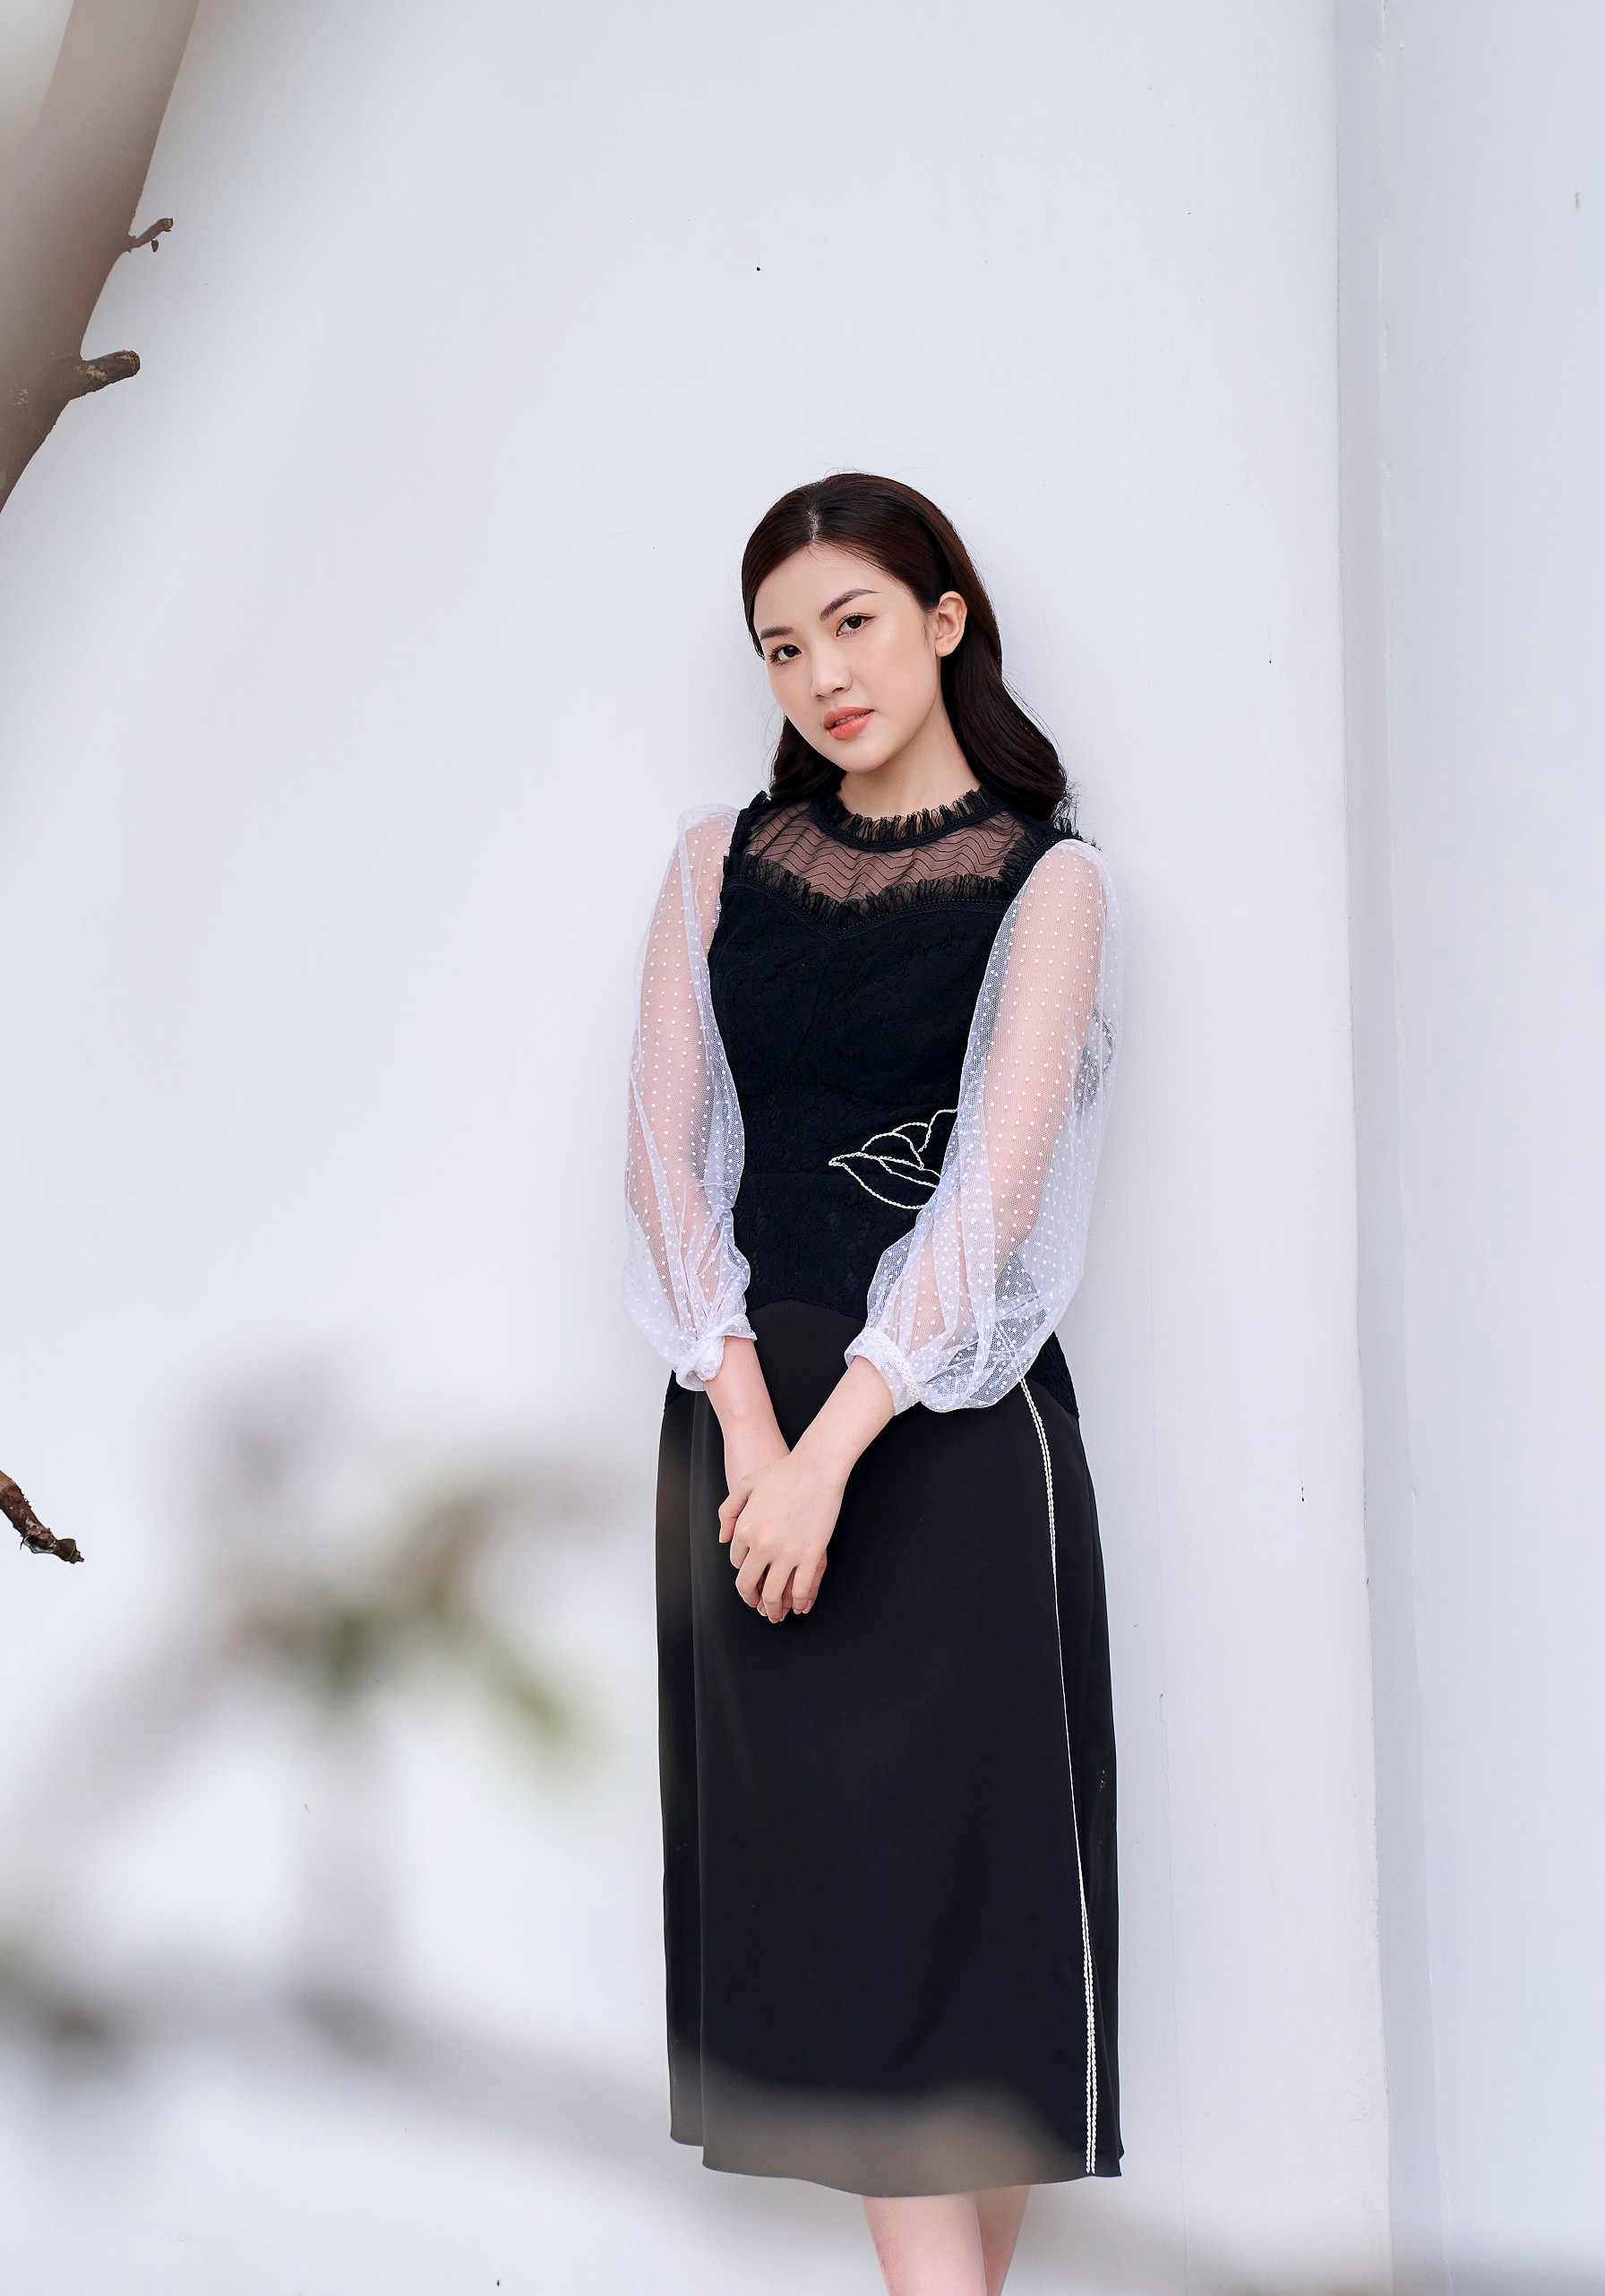 Diễn viên Lương Thanh cuốn hút trong trang phục đen - trắng